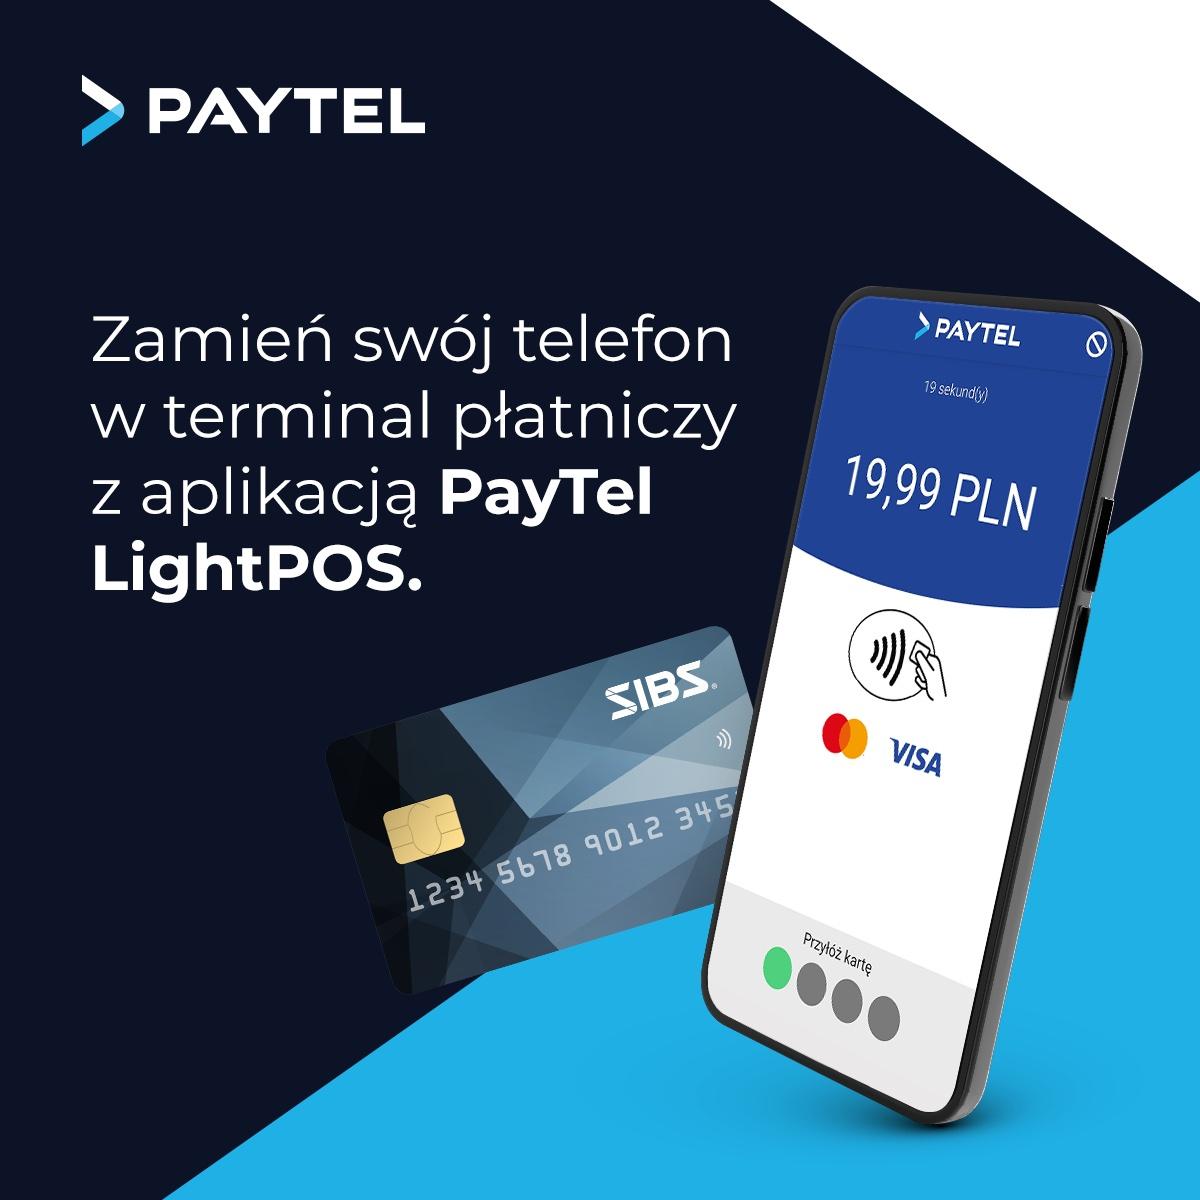 Smartfon i karta płatnicza i tekst: PAYTEL zamień swój telefon w terminal płatniczy z aplikacją Paytel + LightPOS